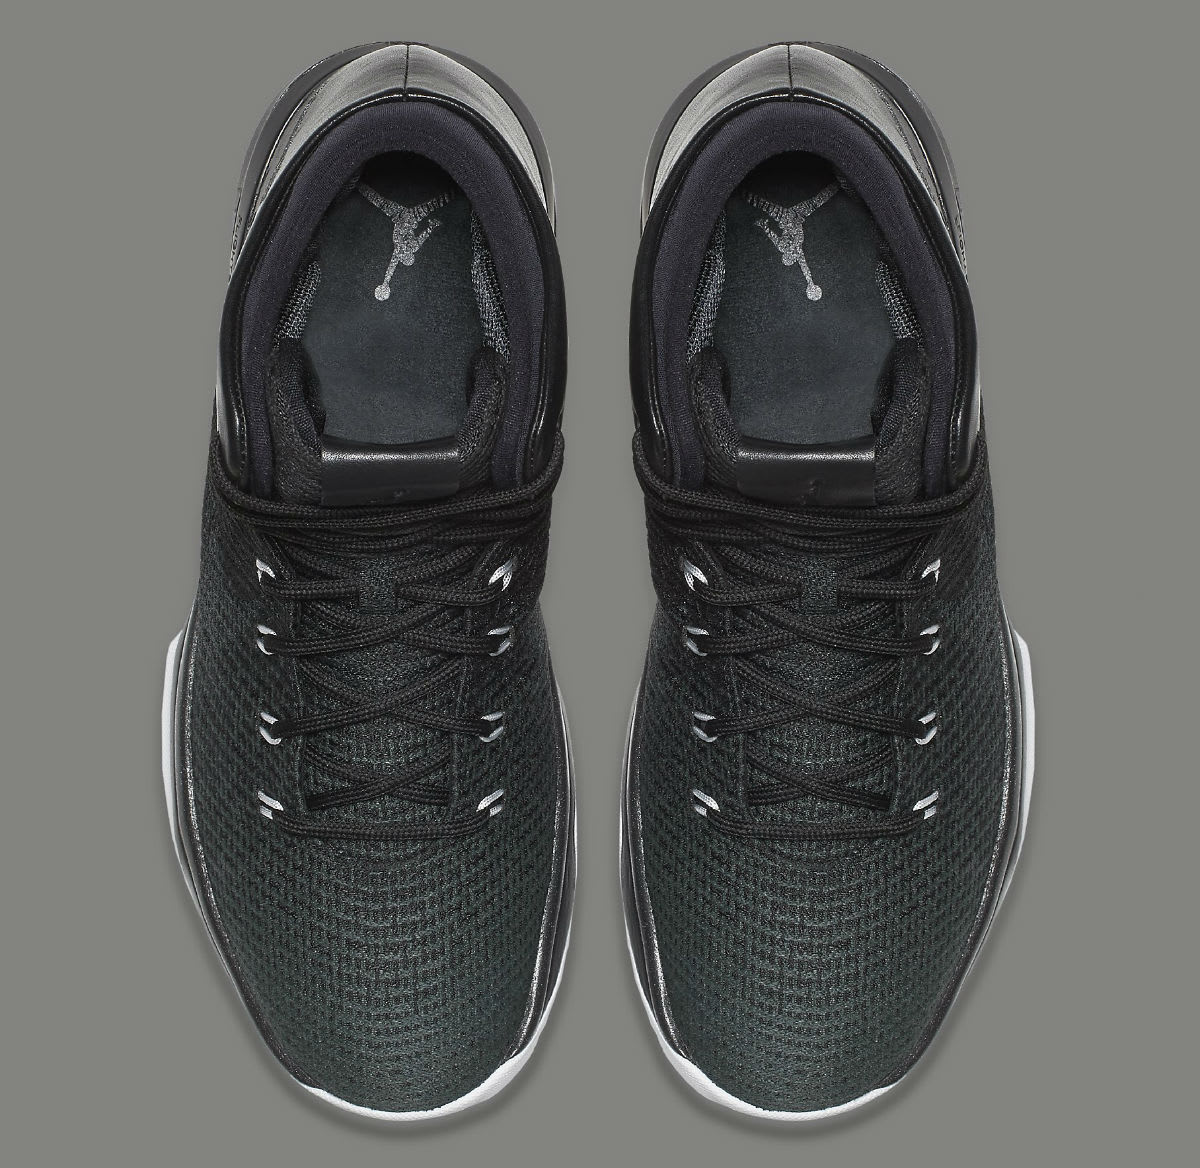 Air Jordan 31 Black Cat Release Date Top 845037-010